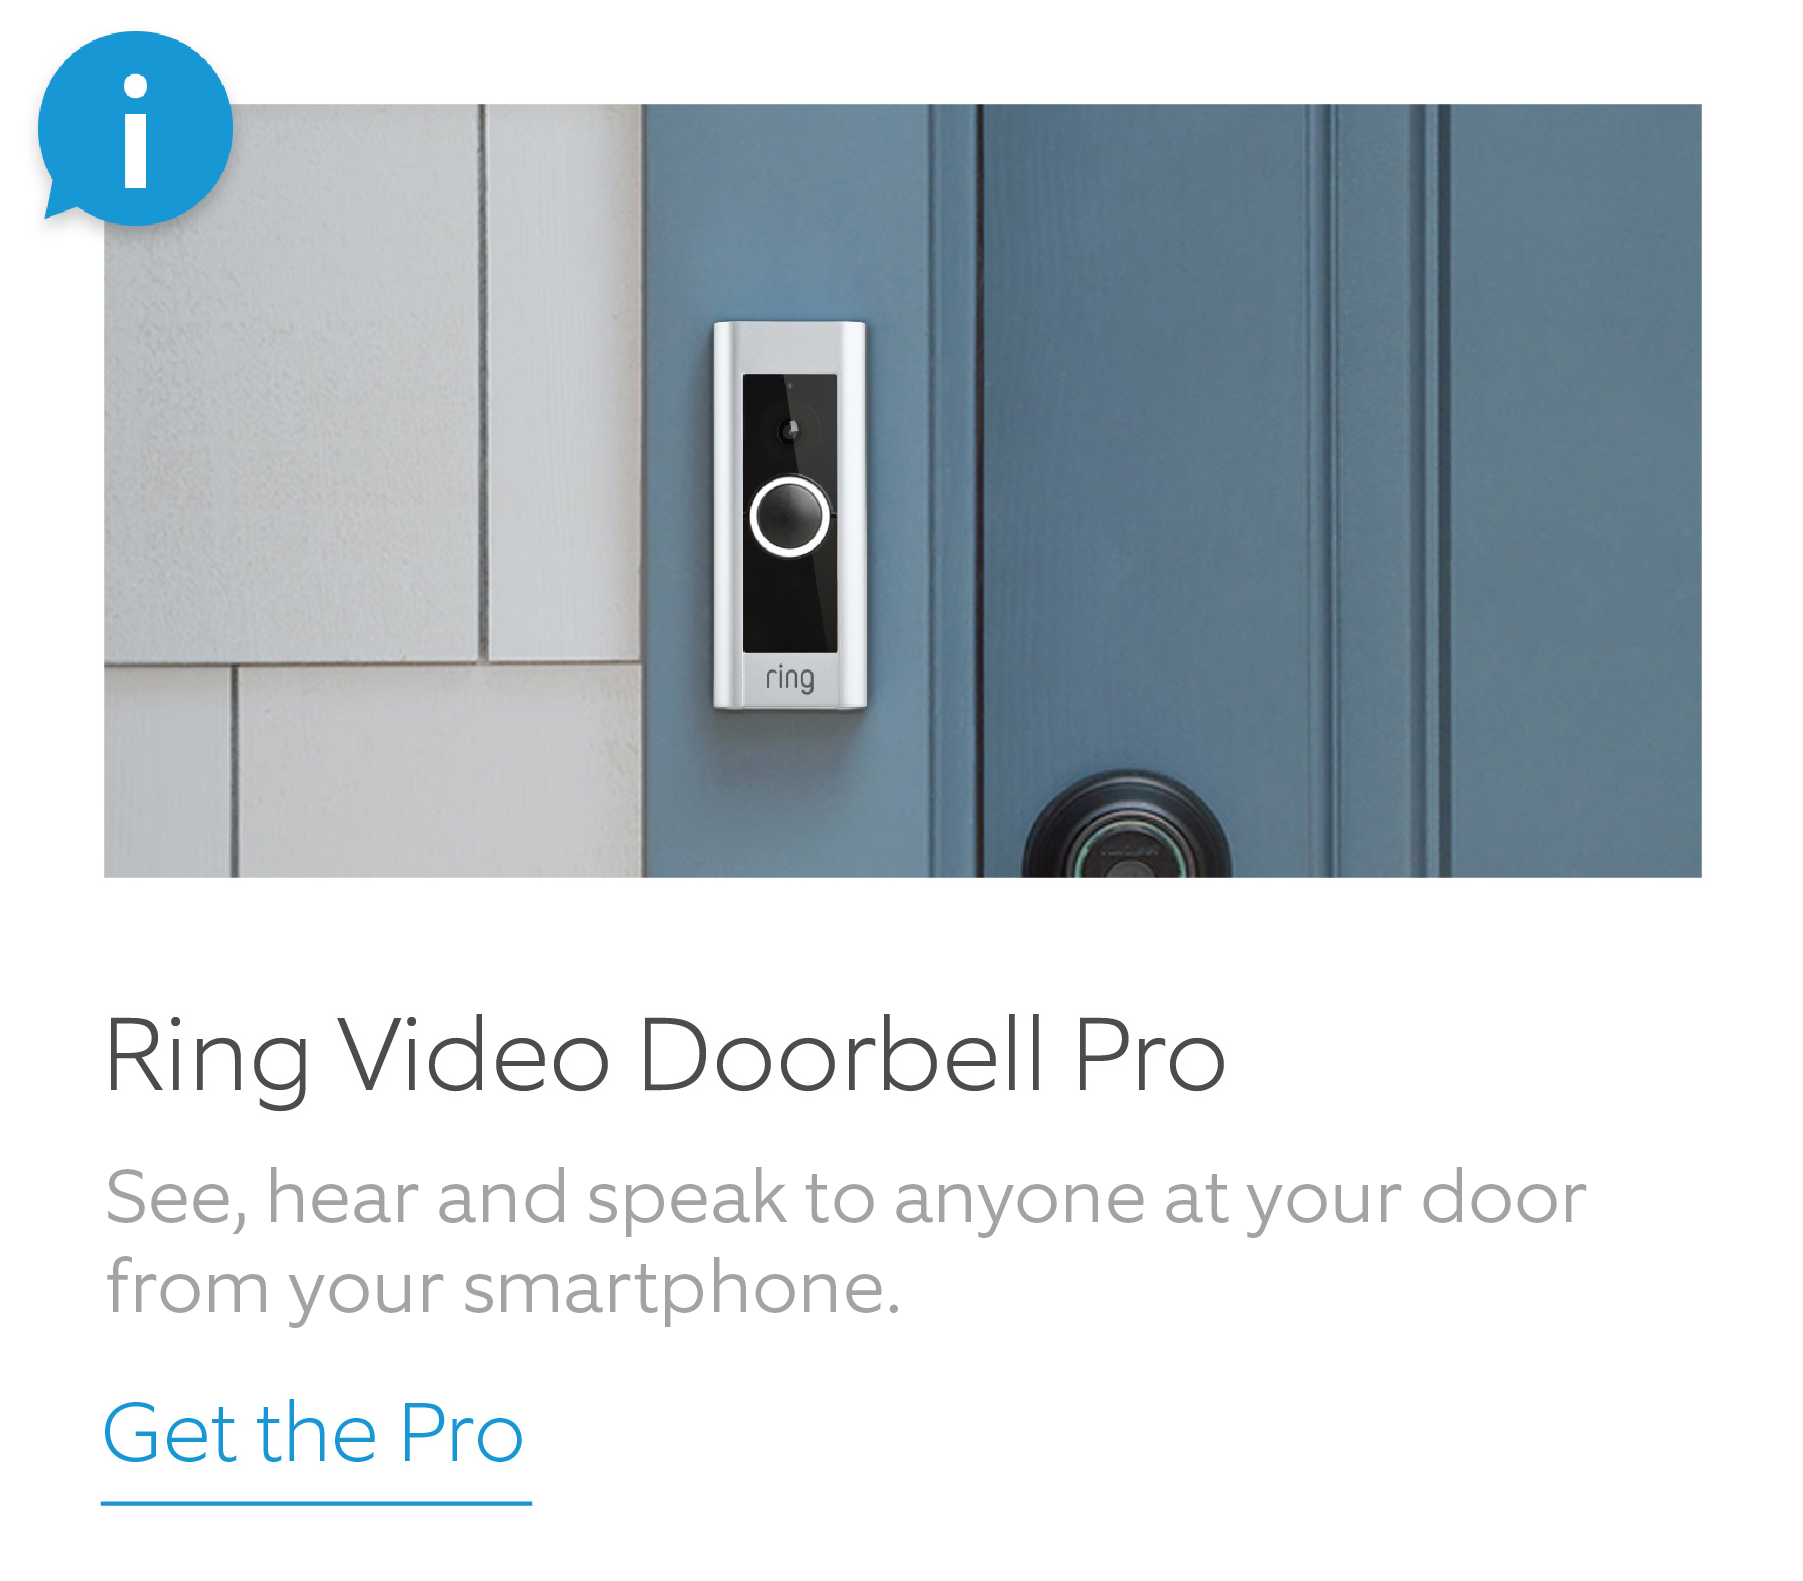 Get Ring Video Doorbell Pro